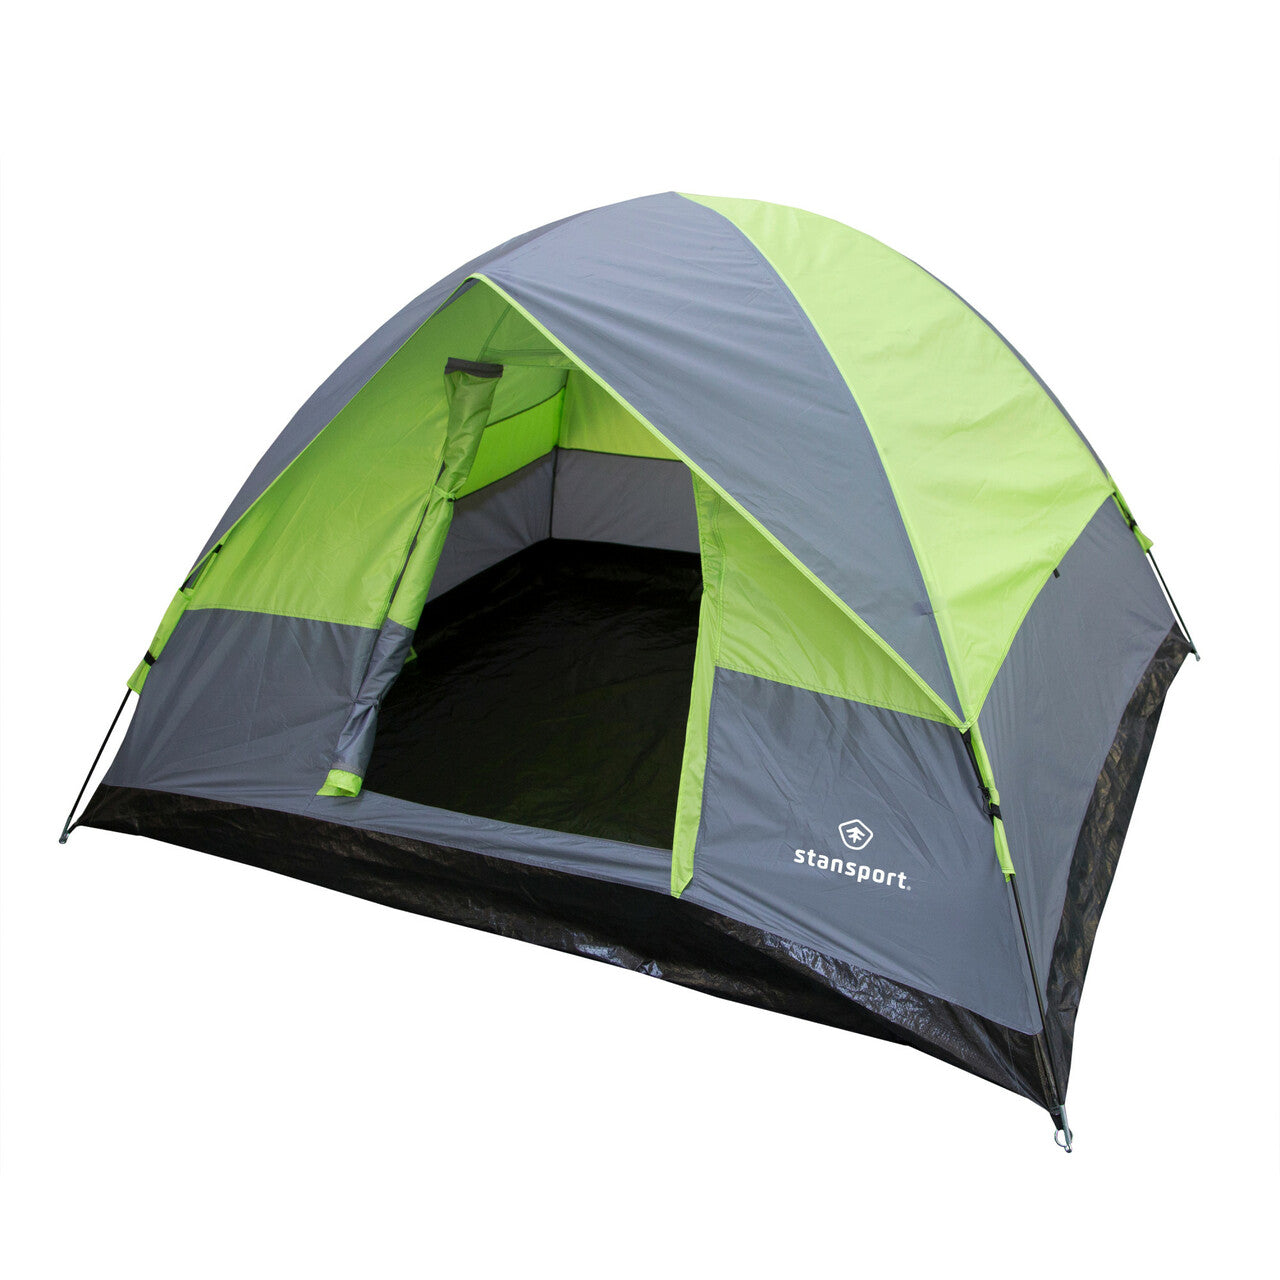 'Cedar Creek' 4 Person Dome Tent